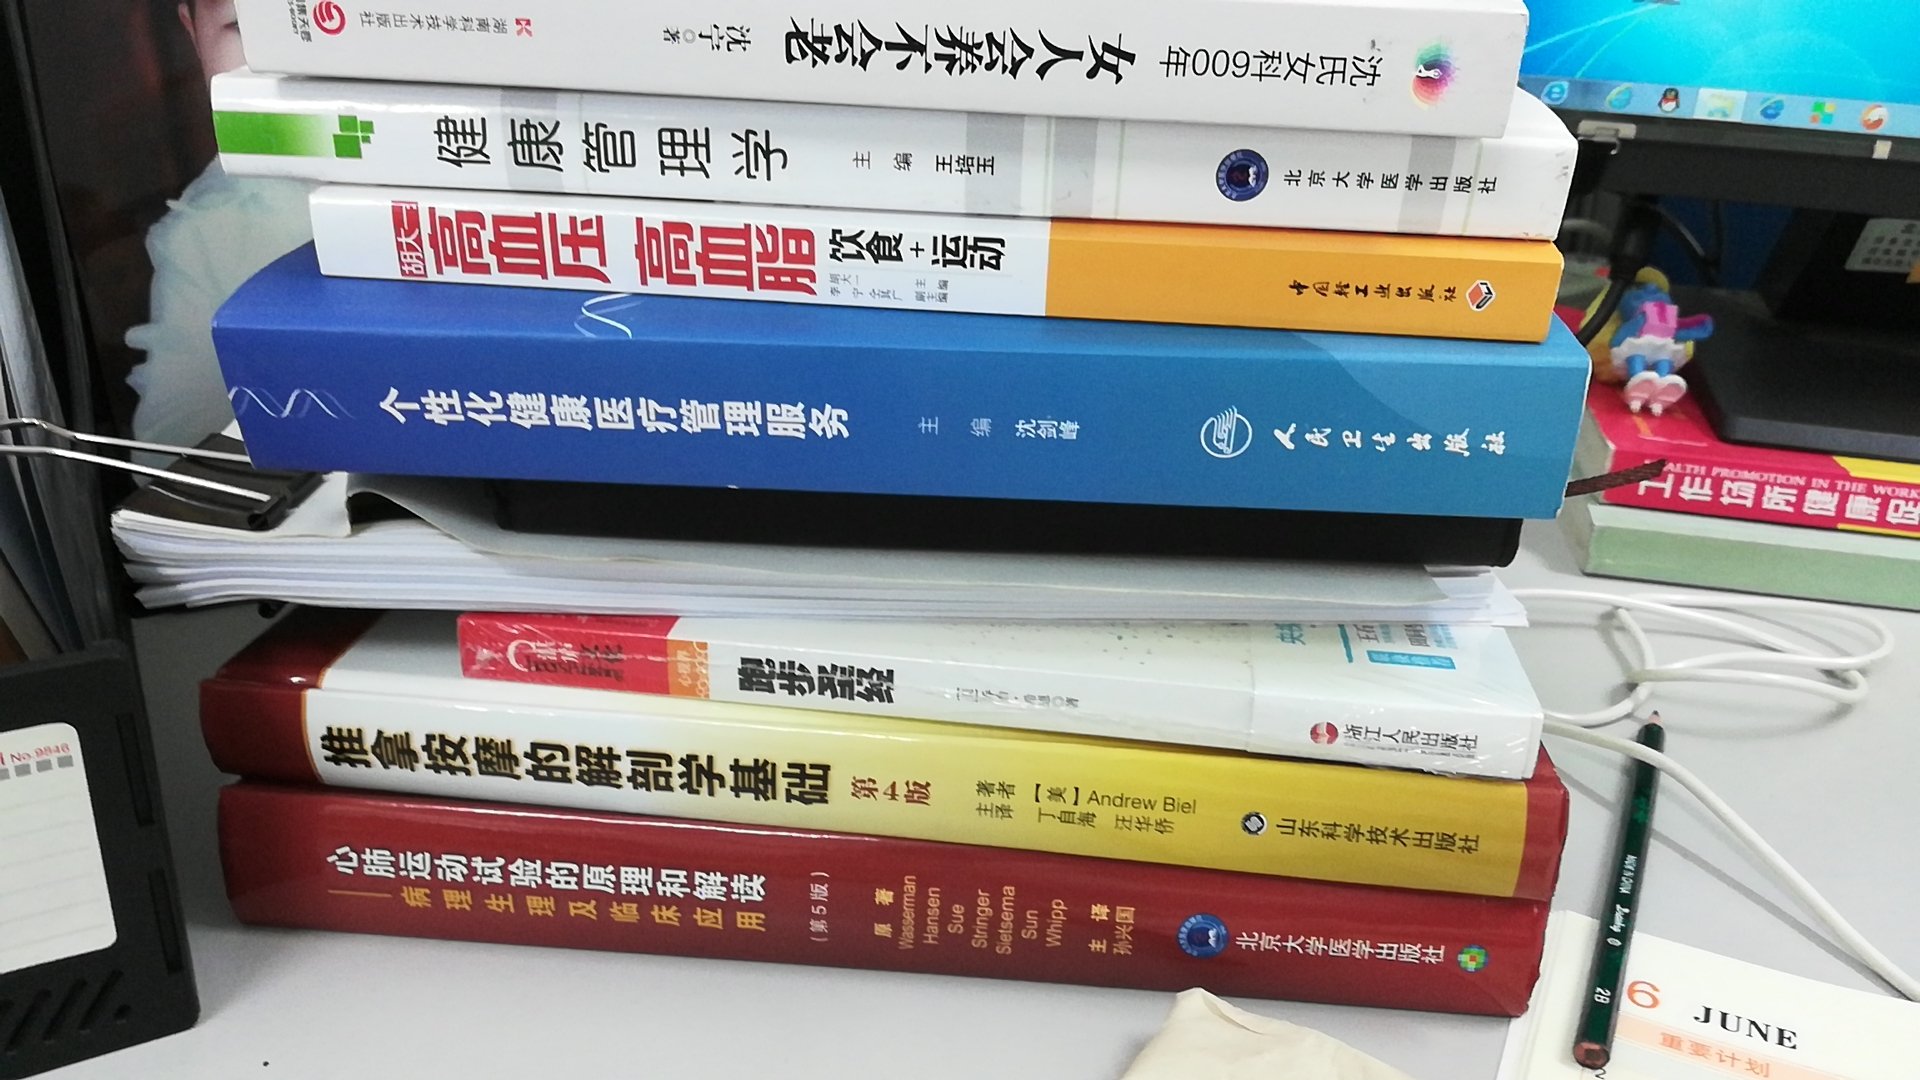 专业书籍！学习。很好的科普书！一次买了很多书，各种学习中！